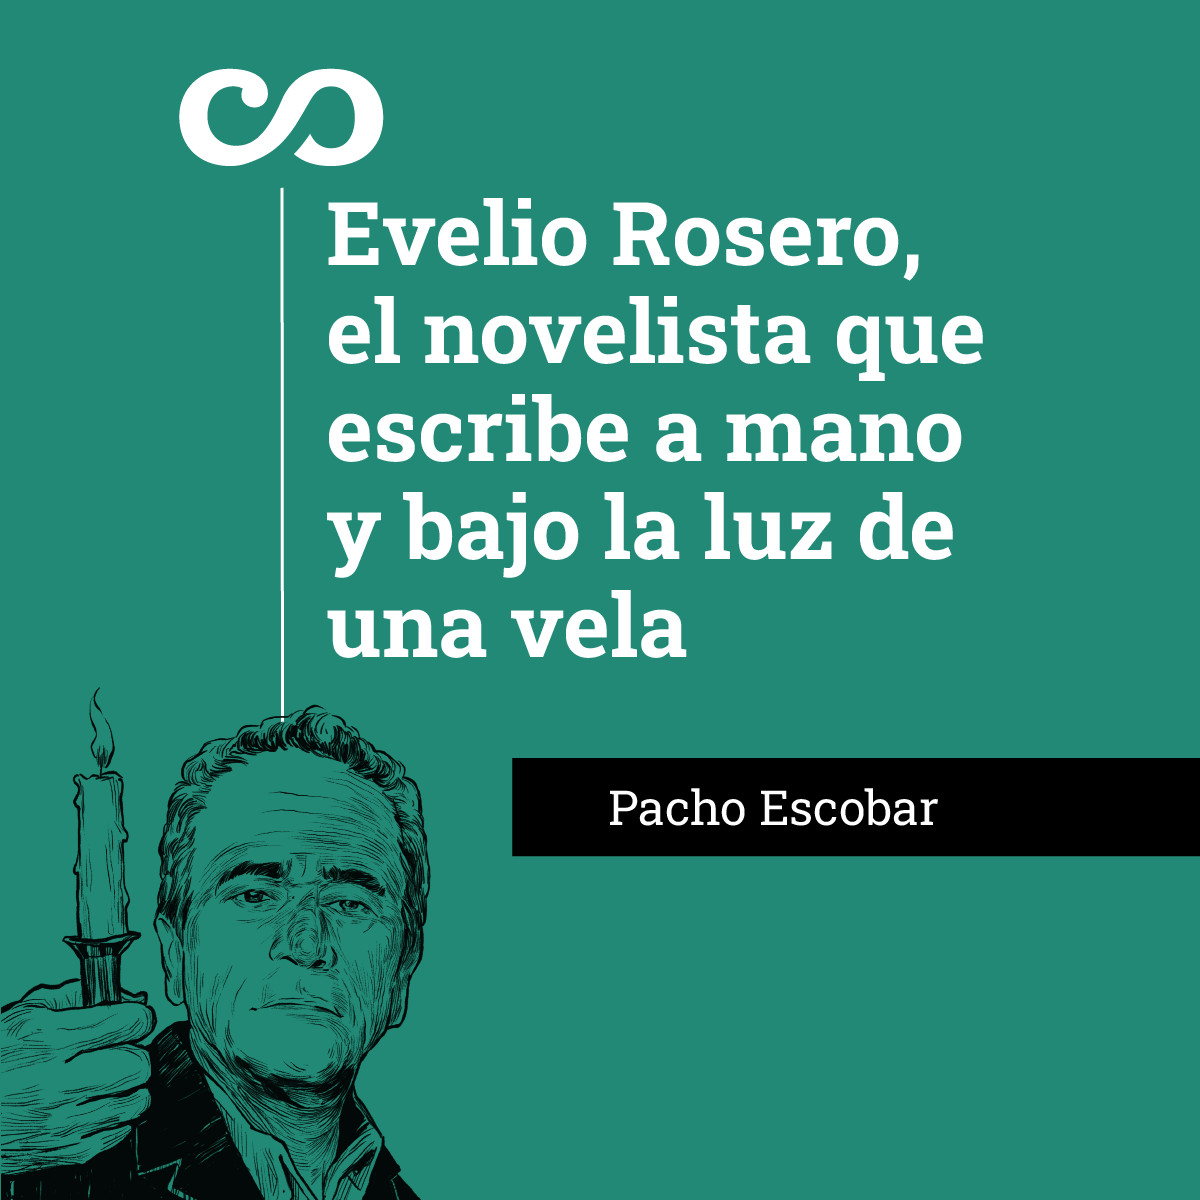 Evelio Rosero, el novelista que escribe a mano y bajo la luz de una vela